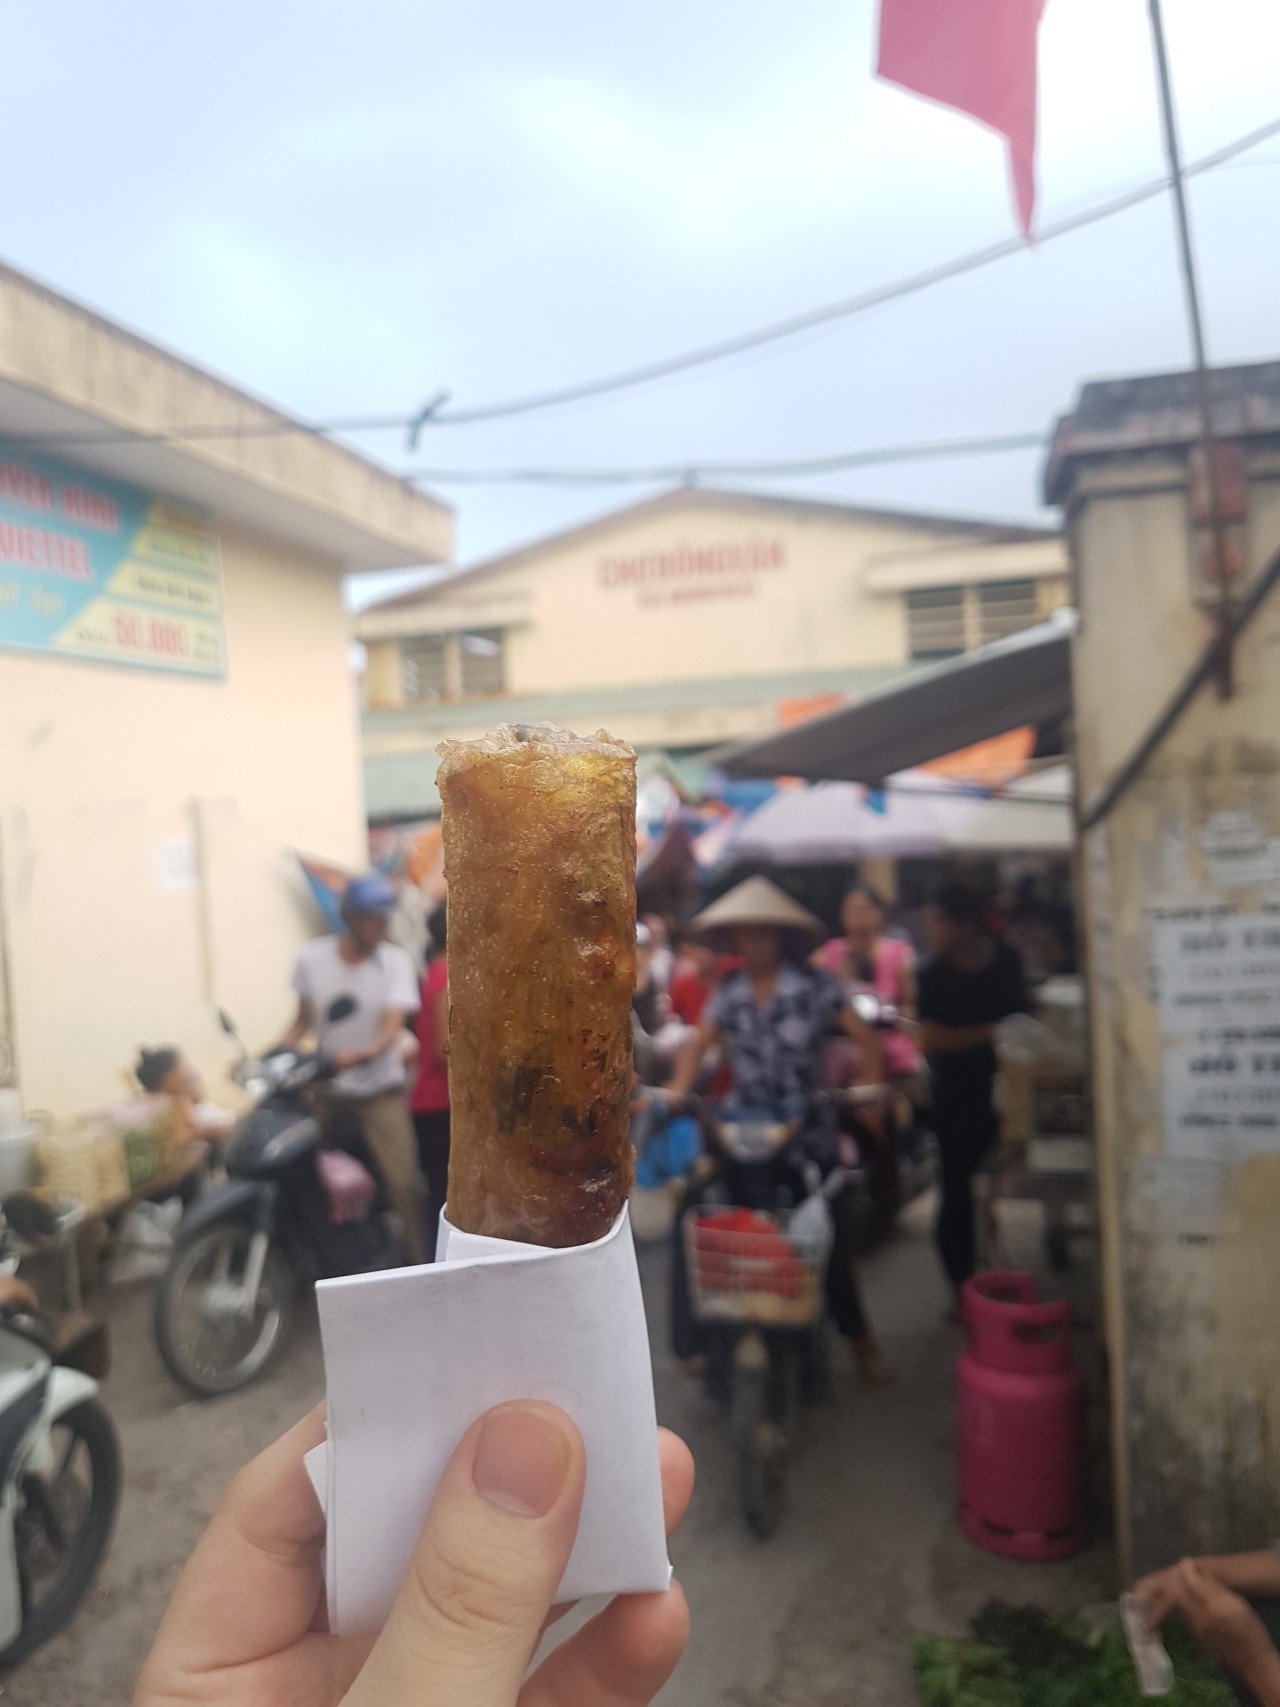 20180820_164432.jpg 베트남에서 먹었던 음식들